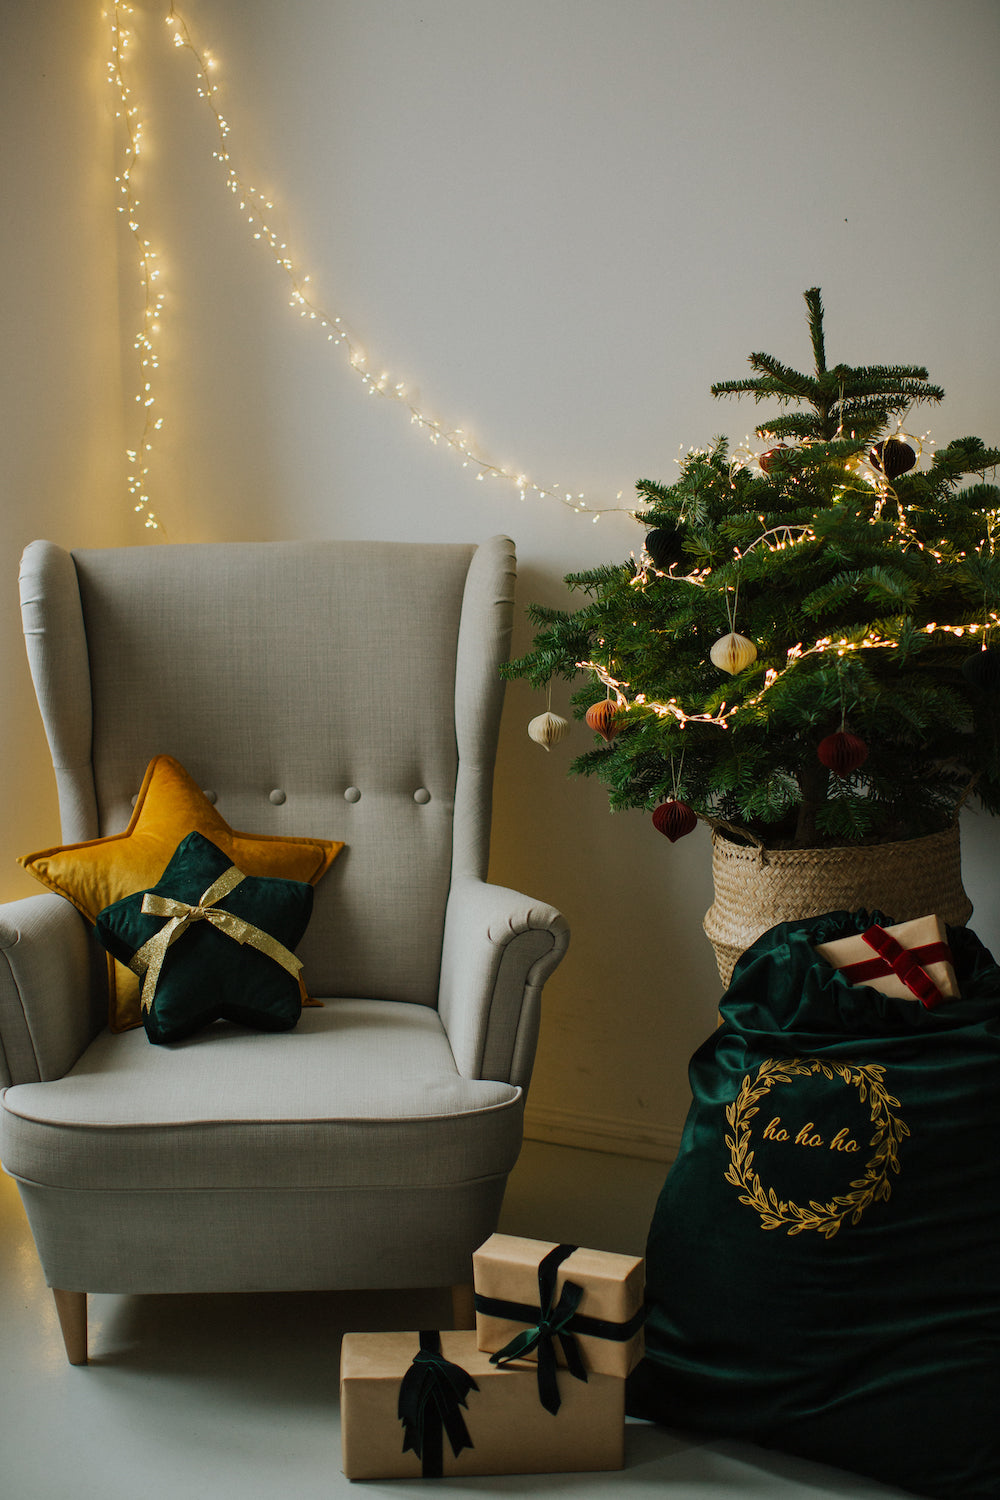 mała poduszka gwiazdka owinięta wstążką na fotelu obok choinki i worka na prezenty welurowego od Bettys Home